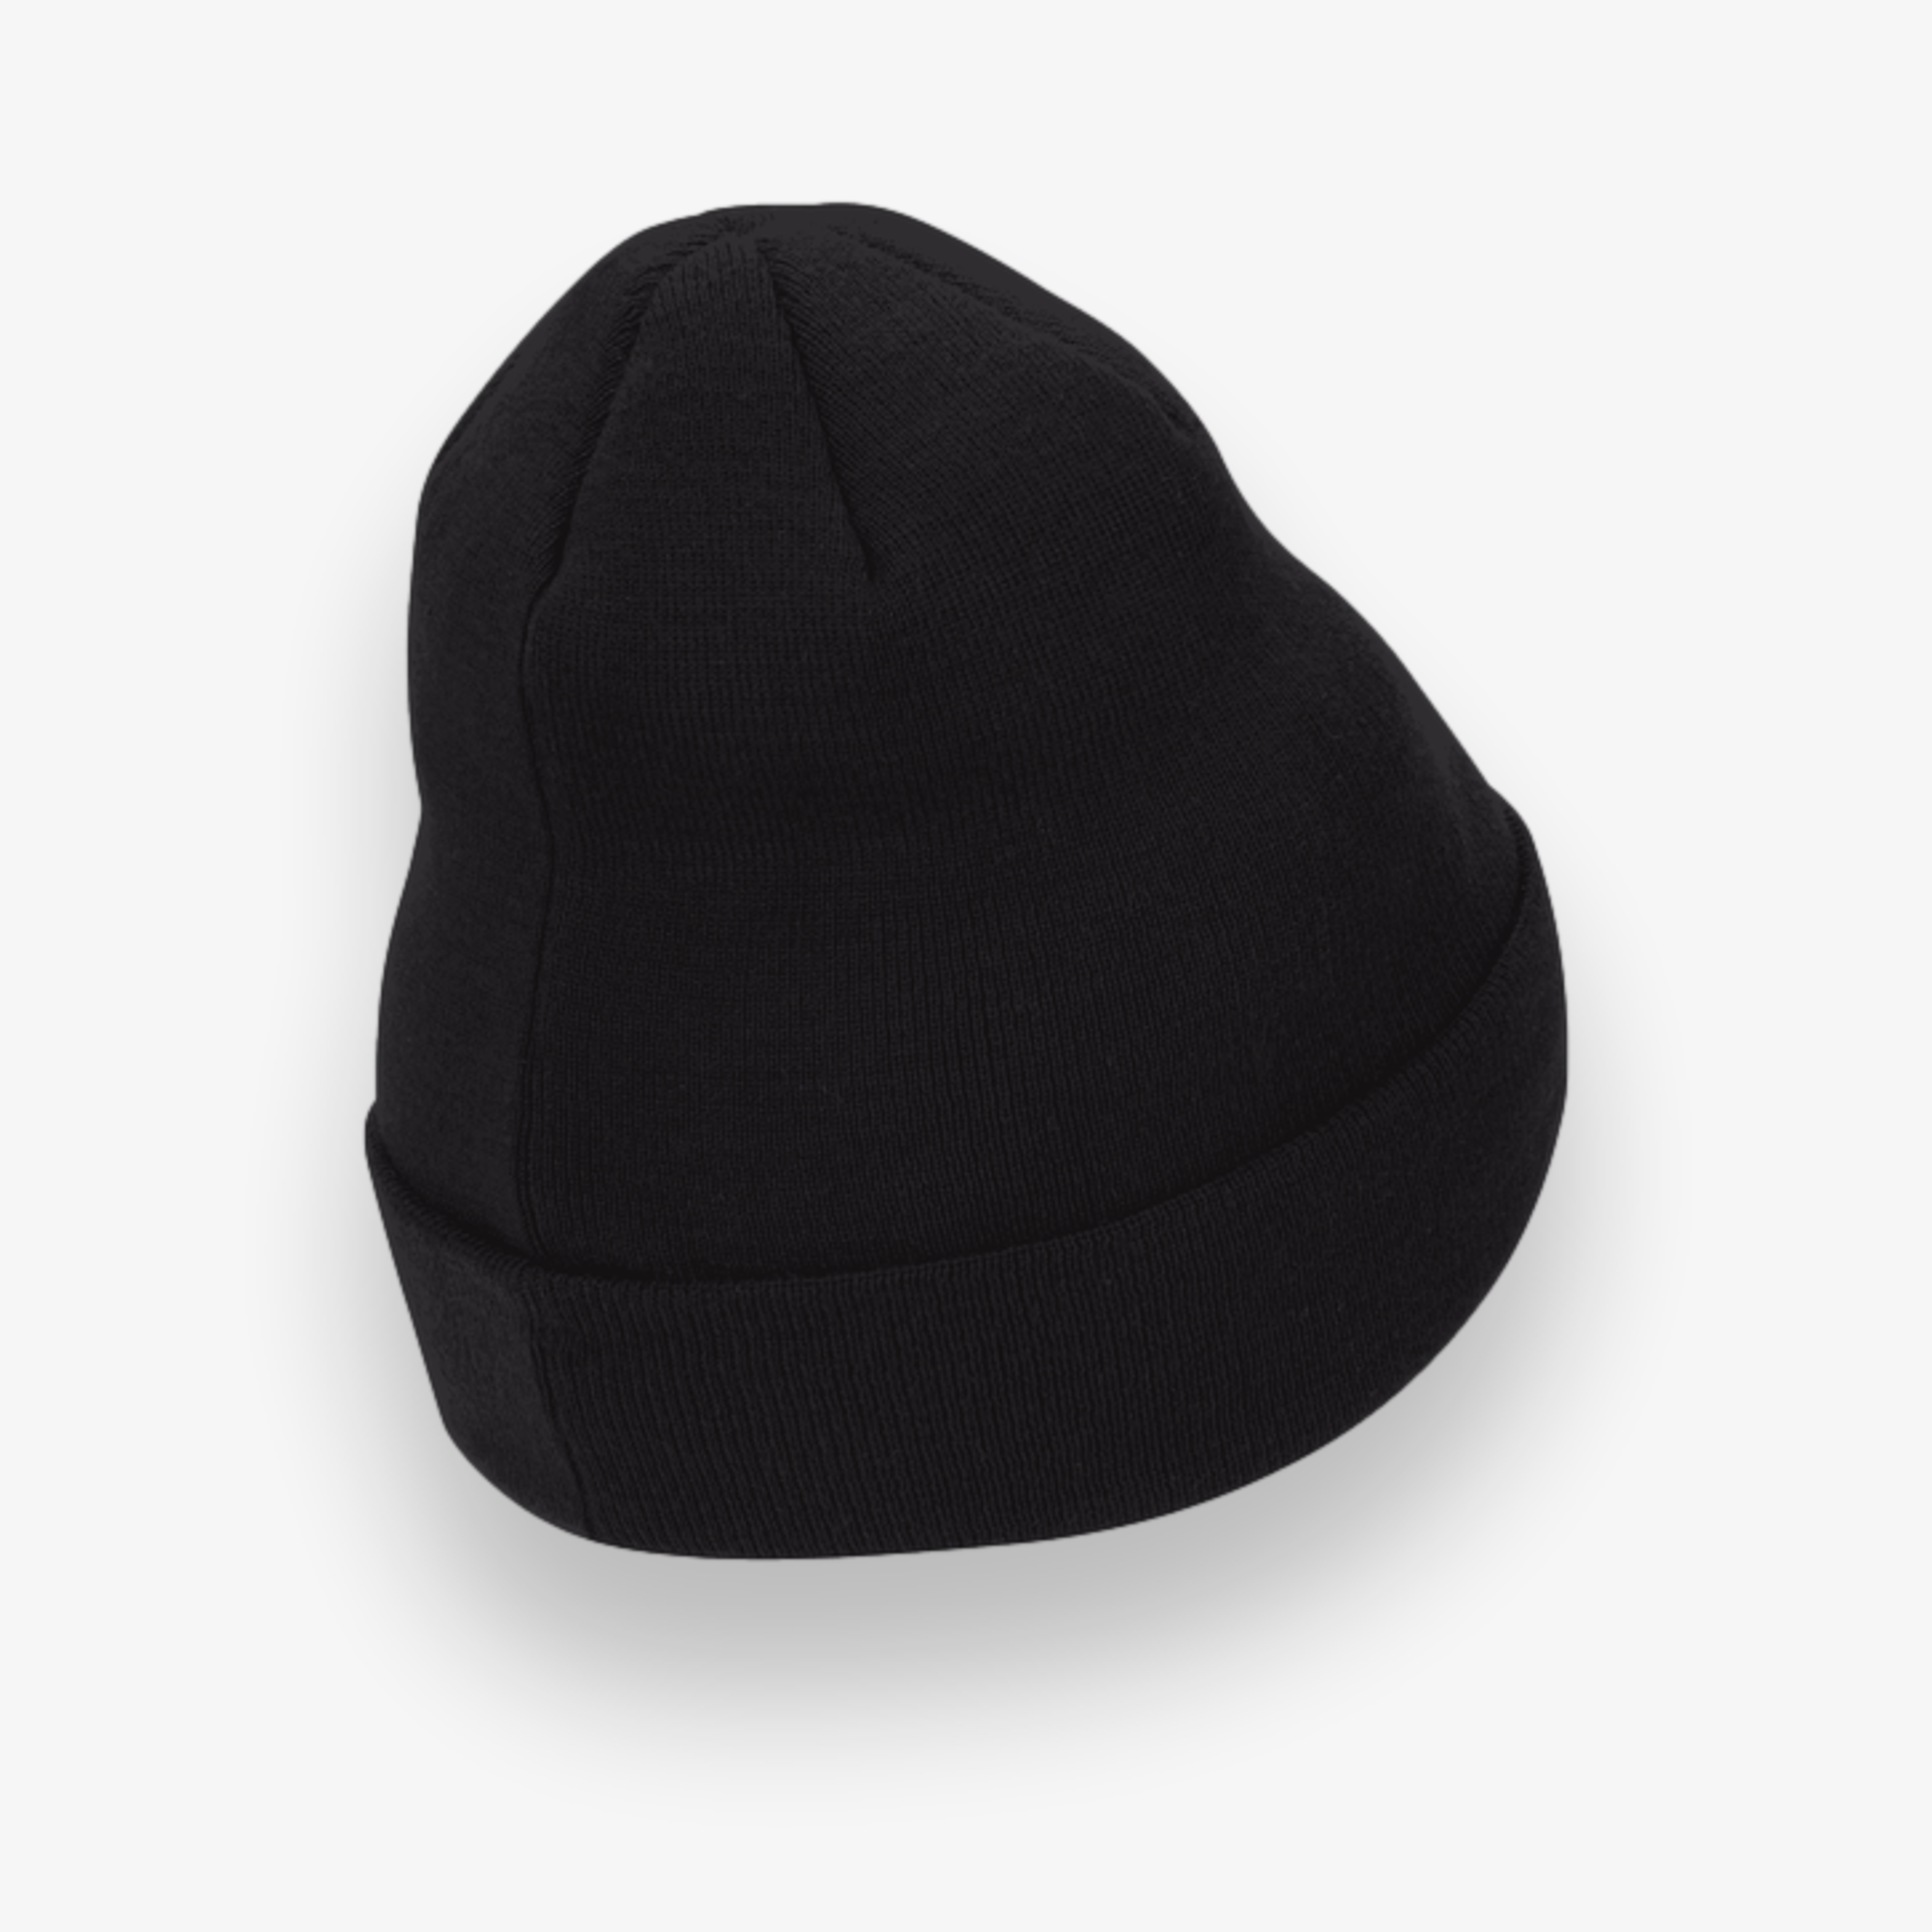 Cuffed Knit Beanie Hat